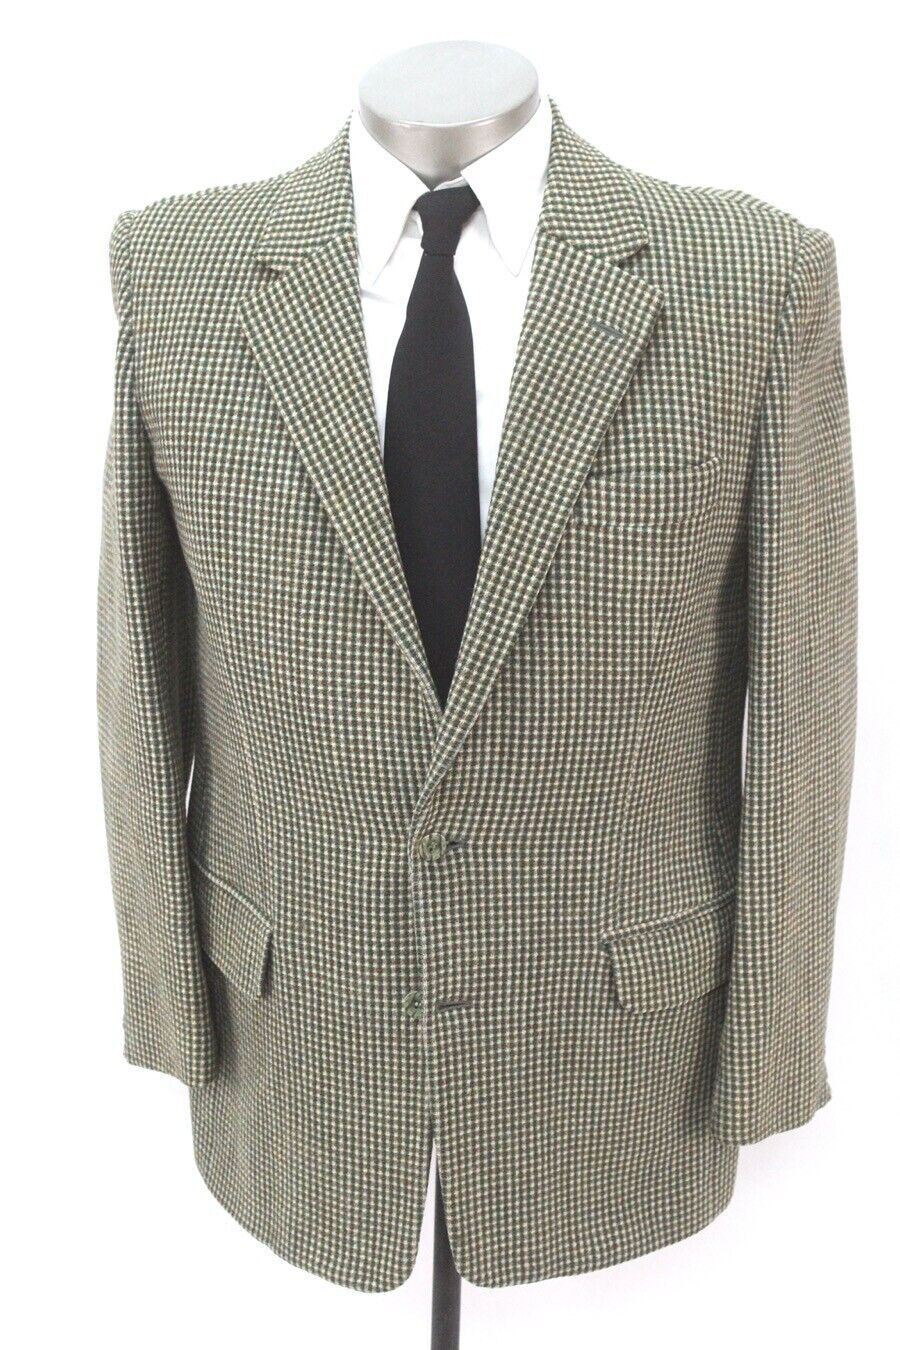 old mens green brown white VINTAGE TWEED blazer jacket sport suit coat wool  42 R